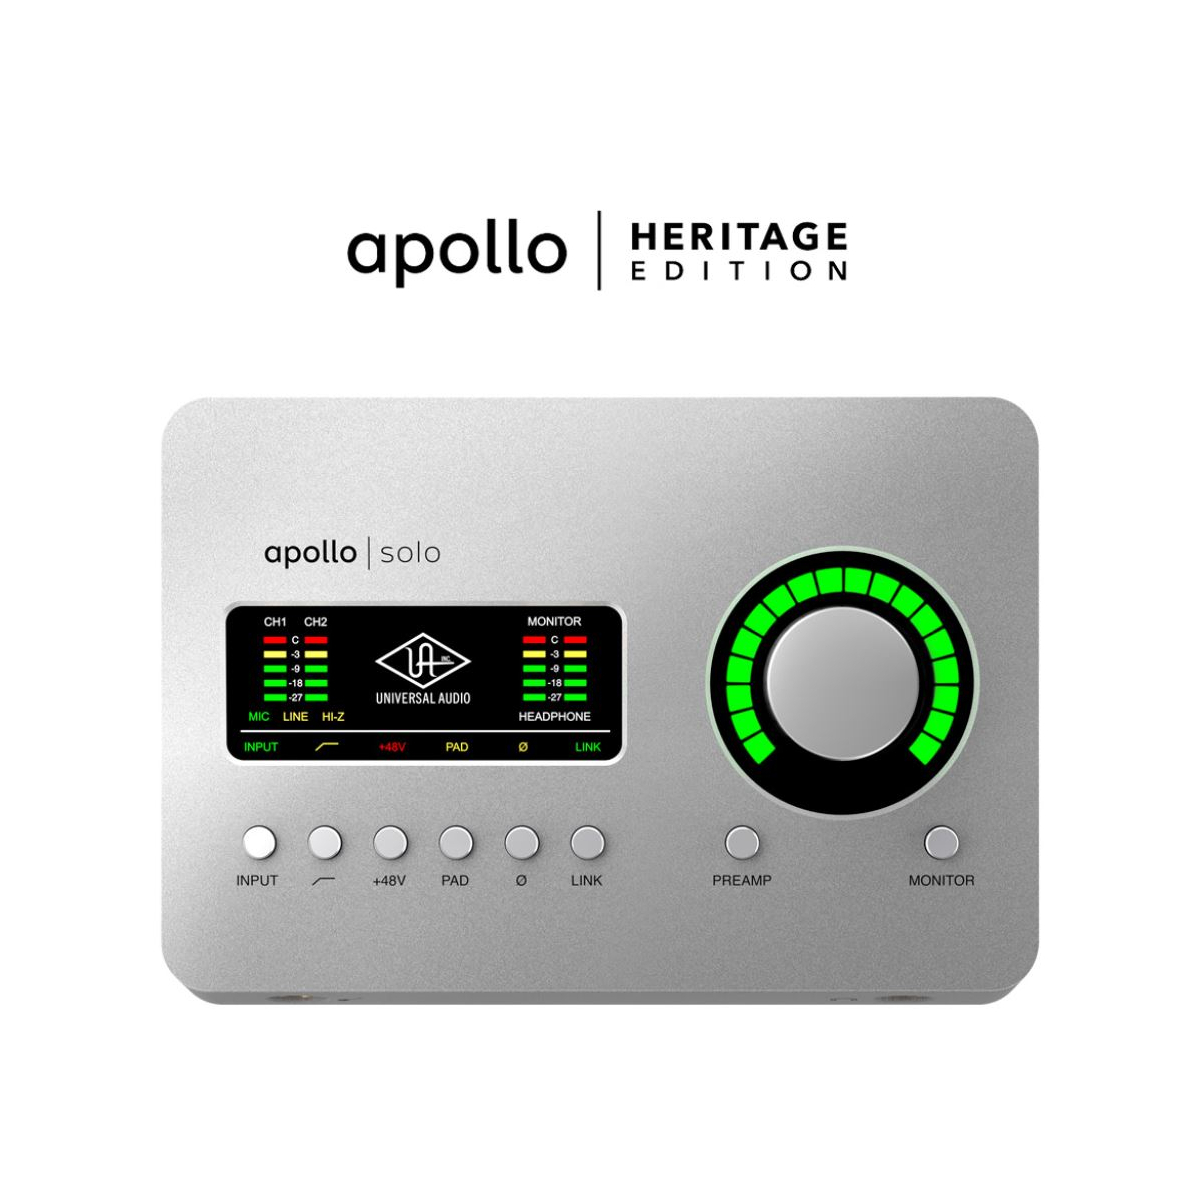 Platine Vinyle Vintage Bluetooth – Heritage Vintage™